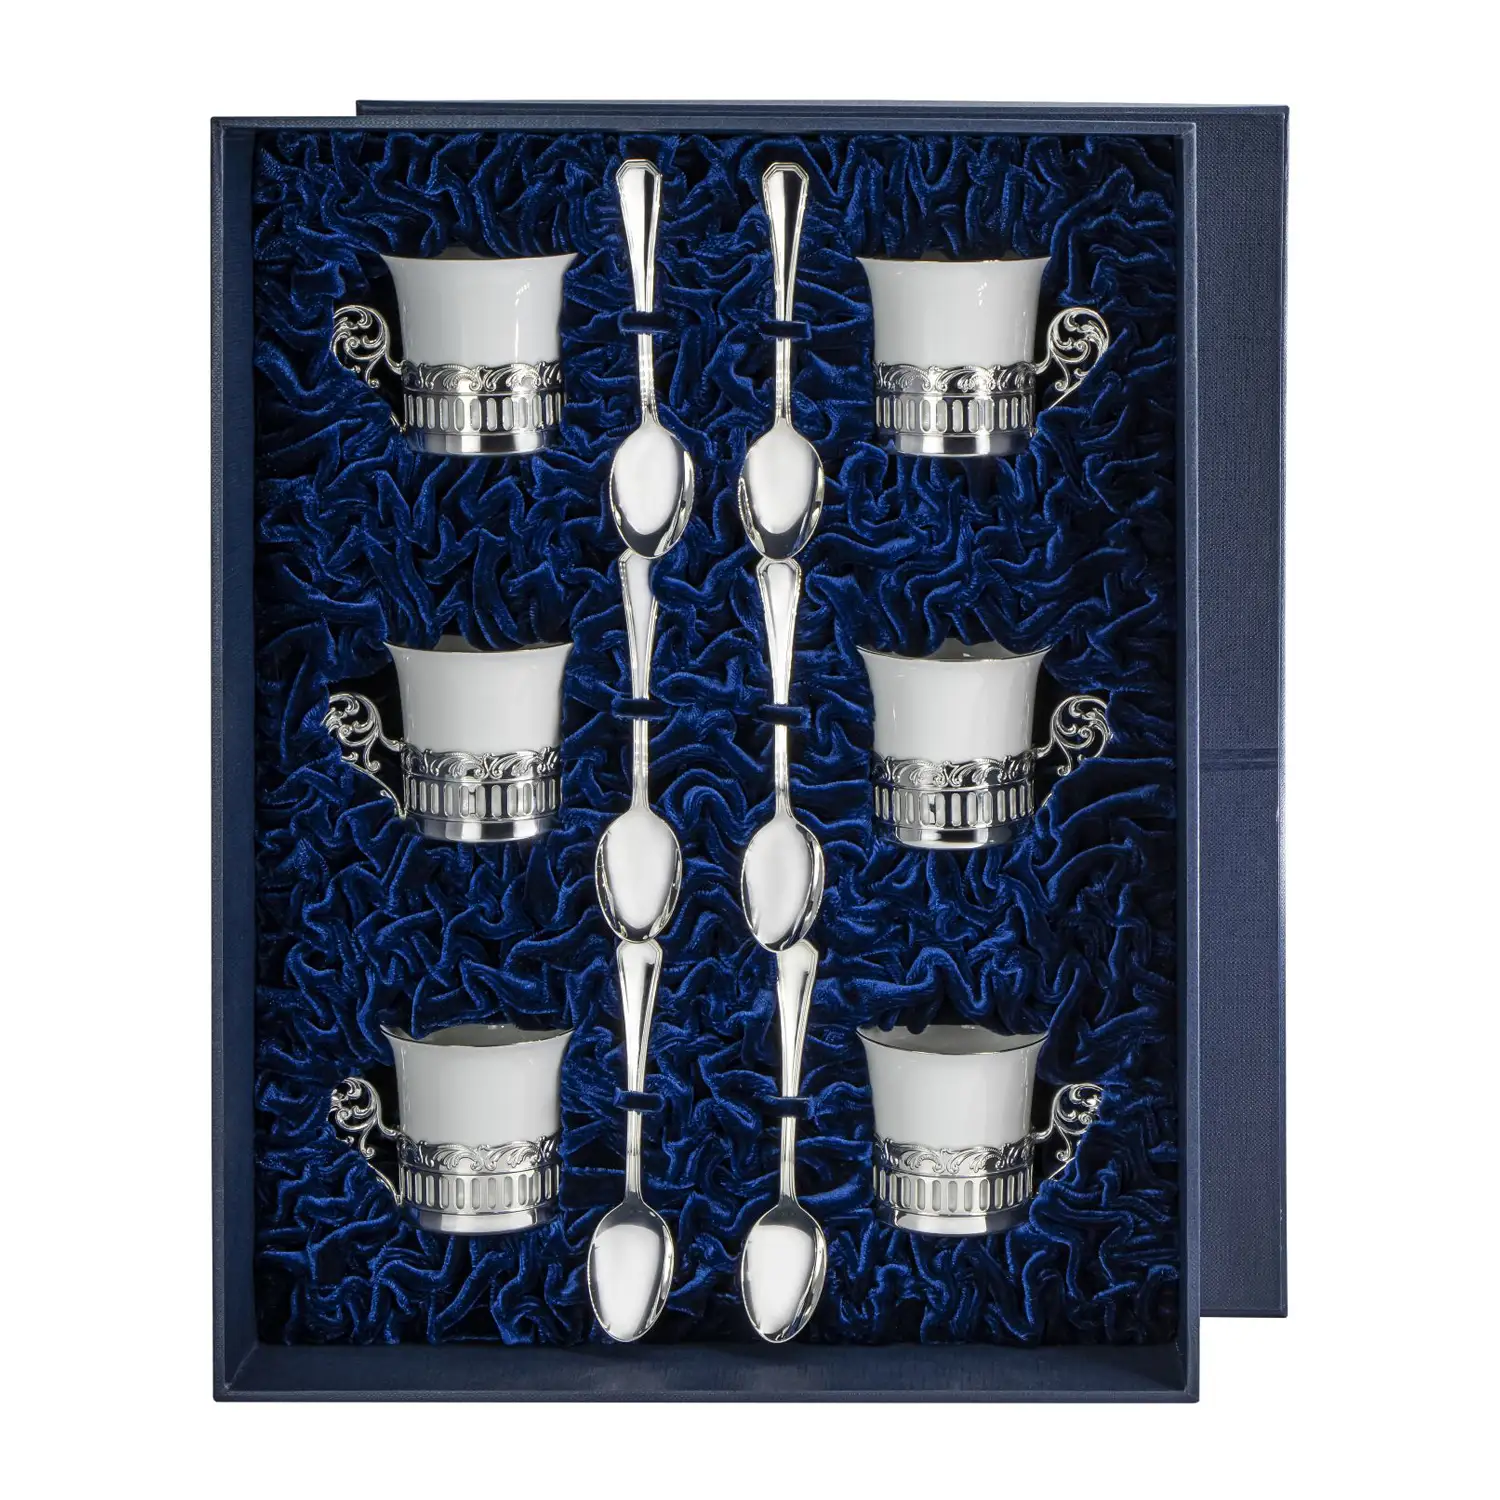 Набор кофейных чашек Богема: ложка, чашка на 6 персон (Серебро 925) набор кофейных чашек богема ложка чашка на 6 персон серебро 925